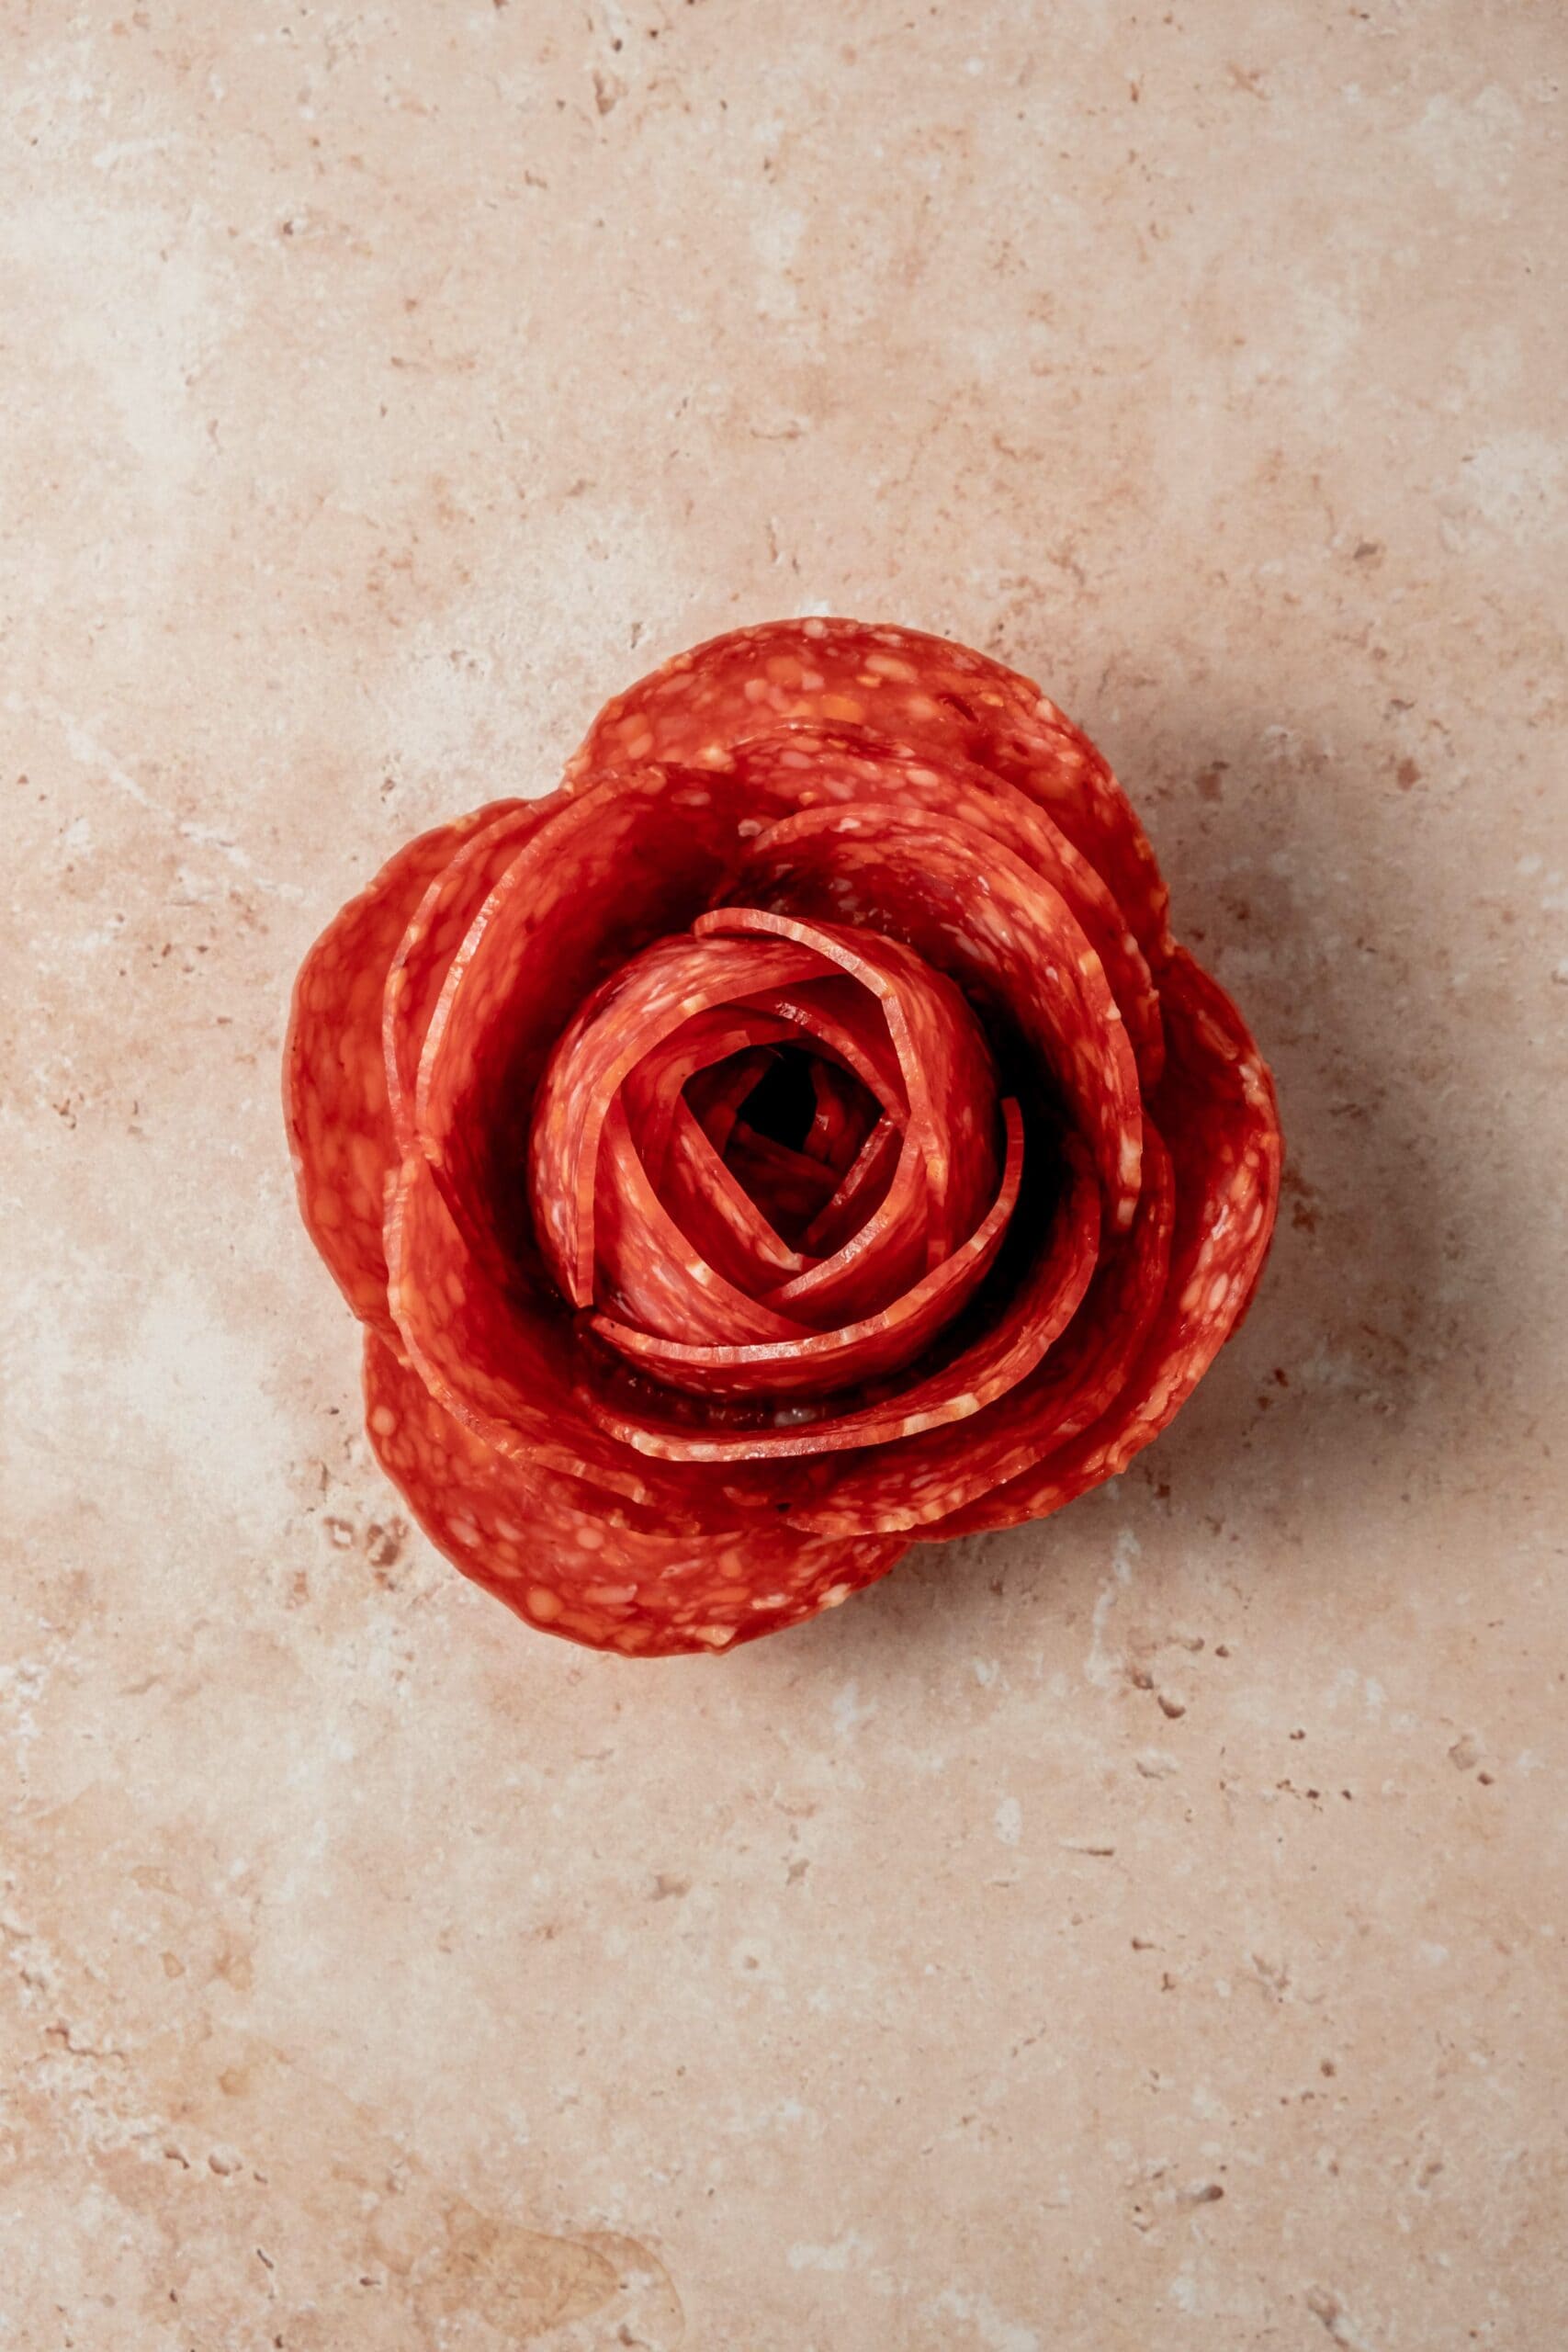 Formed salami rose.